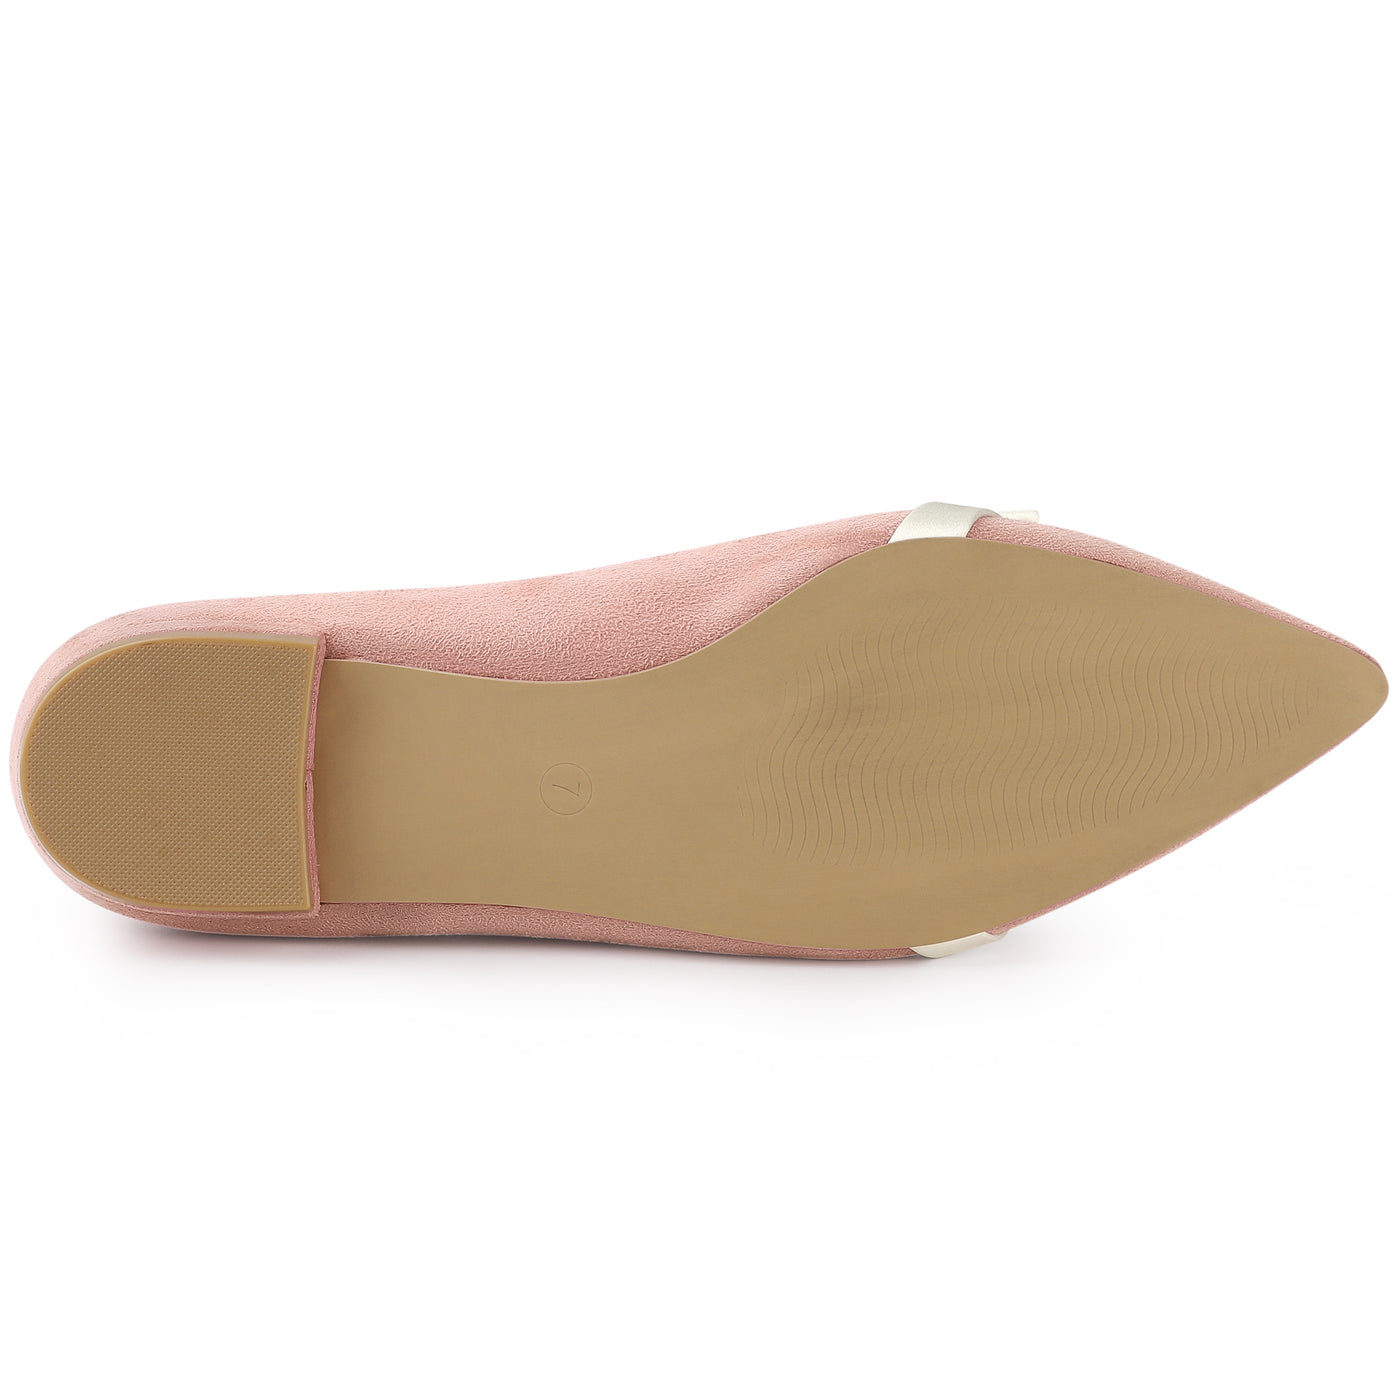 Allegra K Pointed Toe Slip on Ballet Flat Shoes